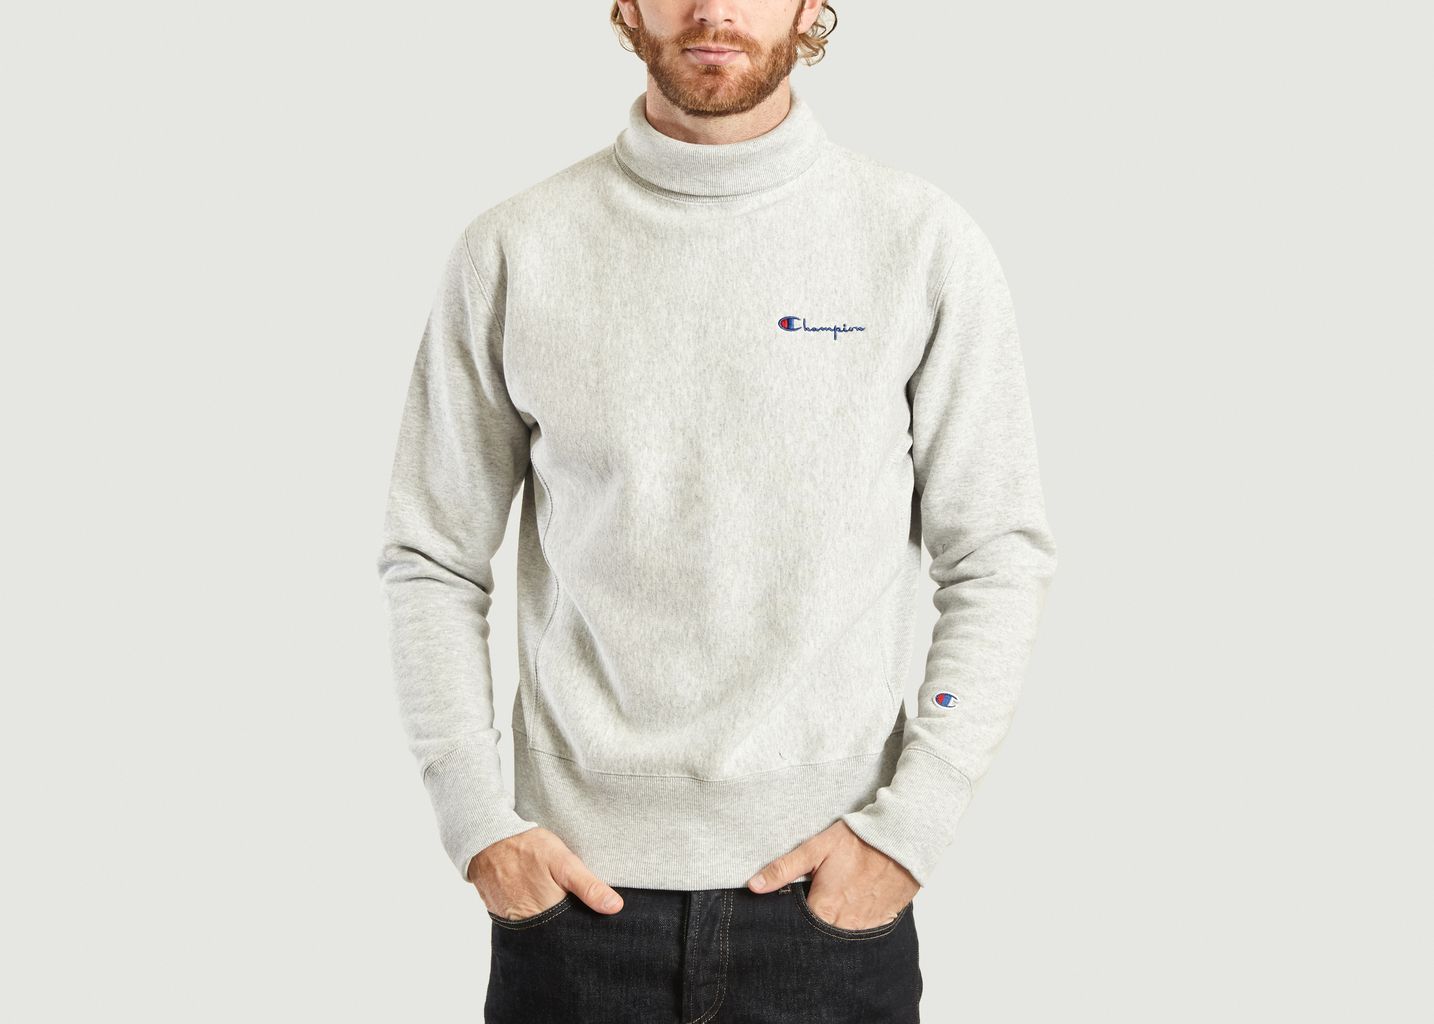 mens lightweight sweatshirt